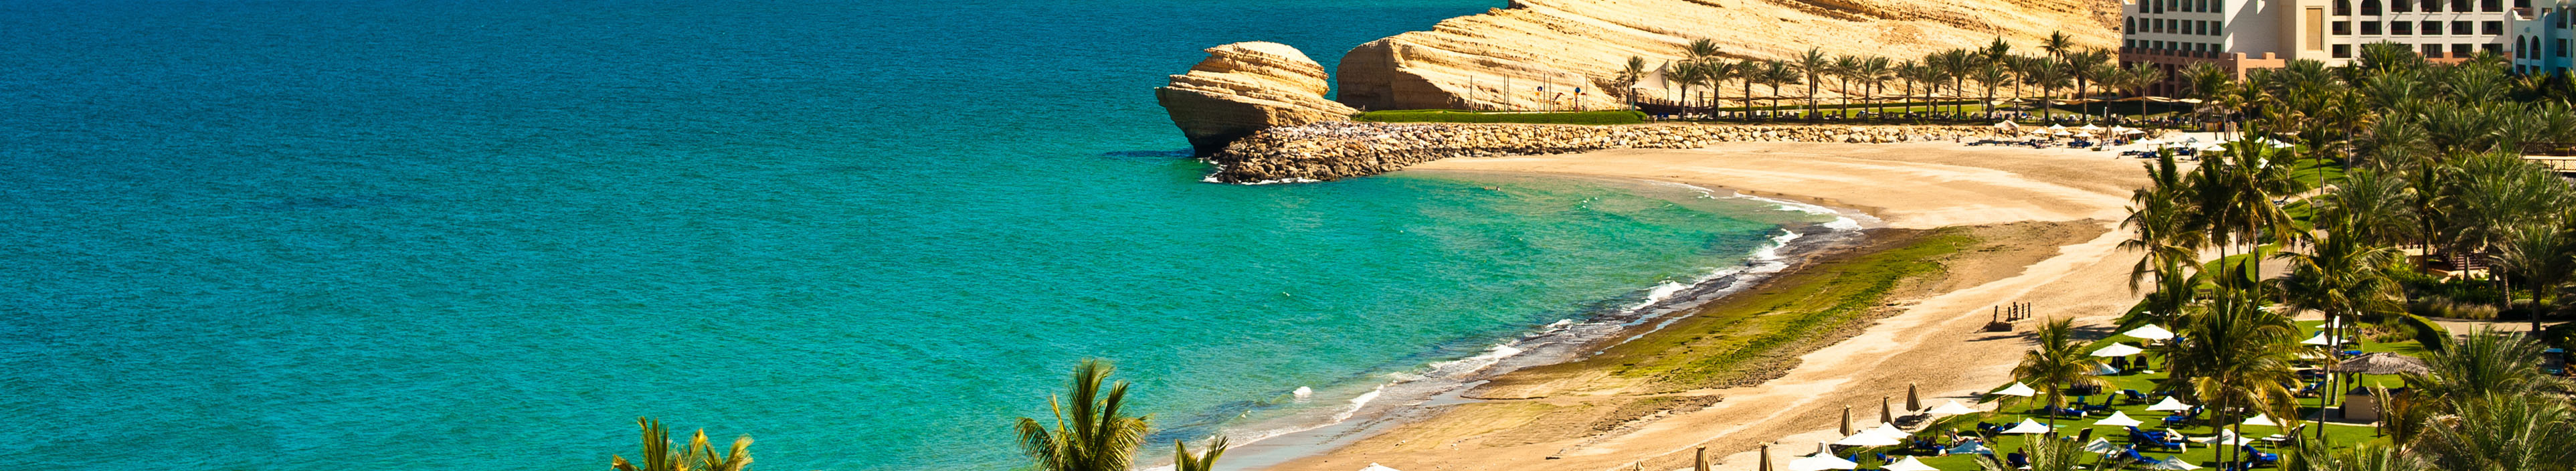 Strand und Palmen im Oman